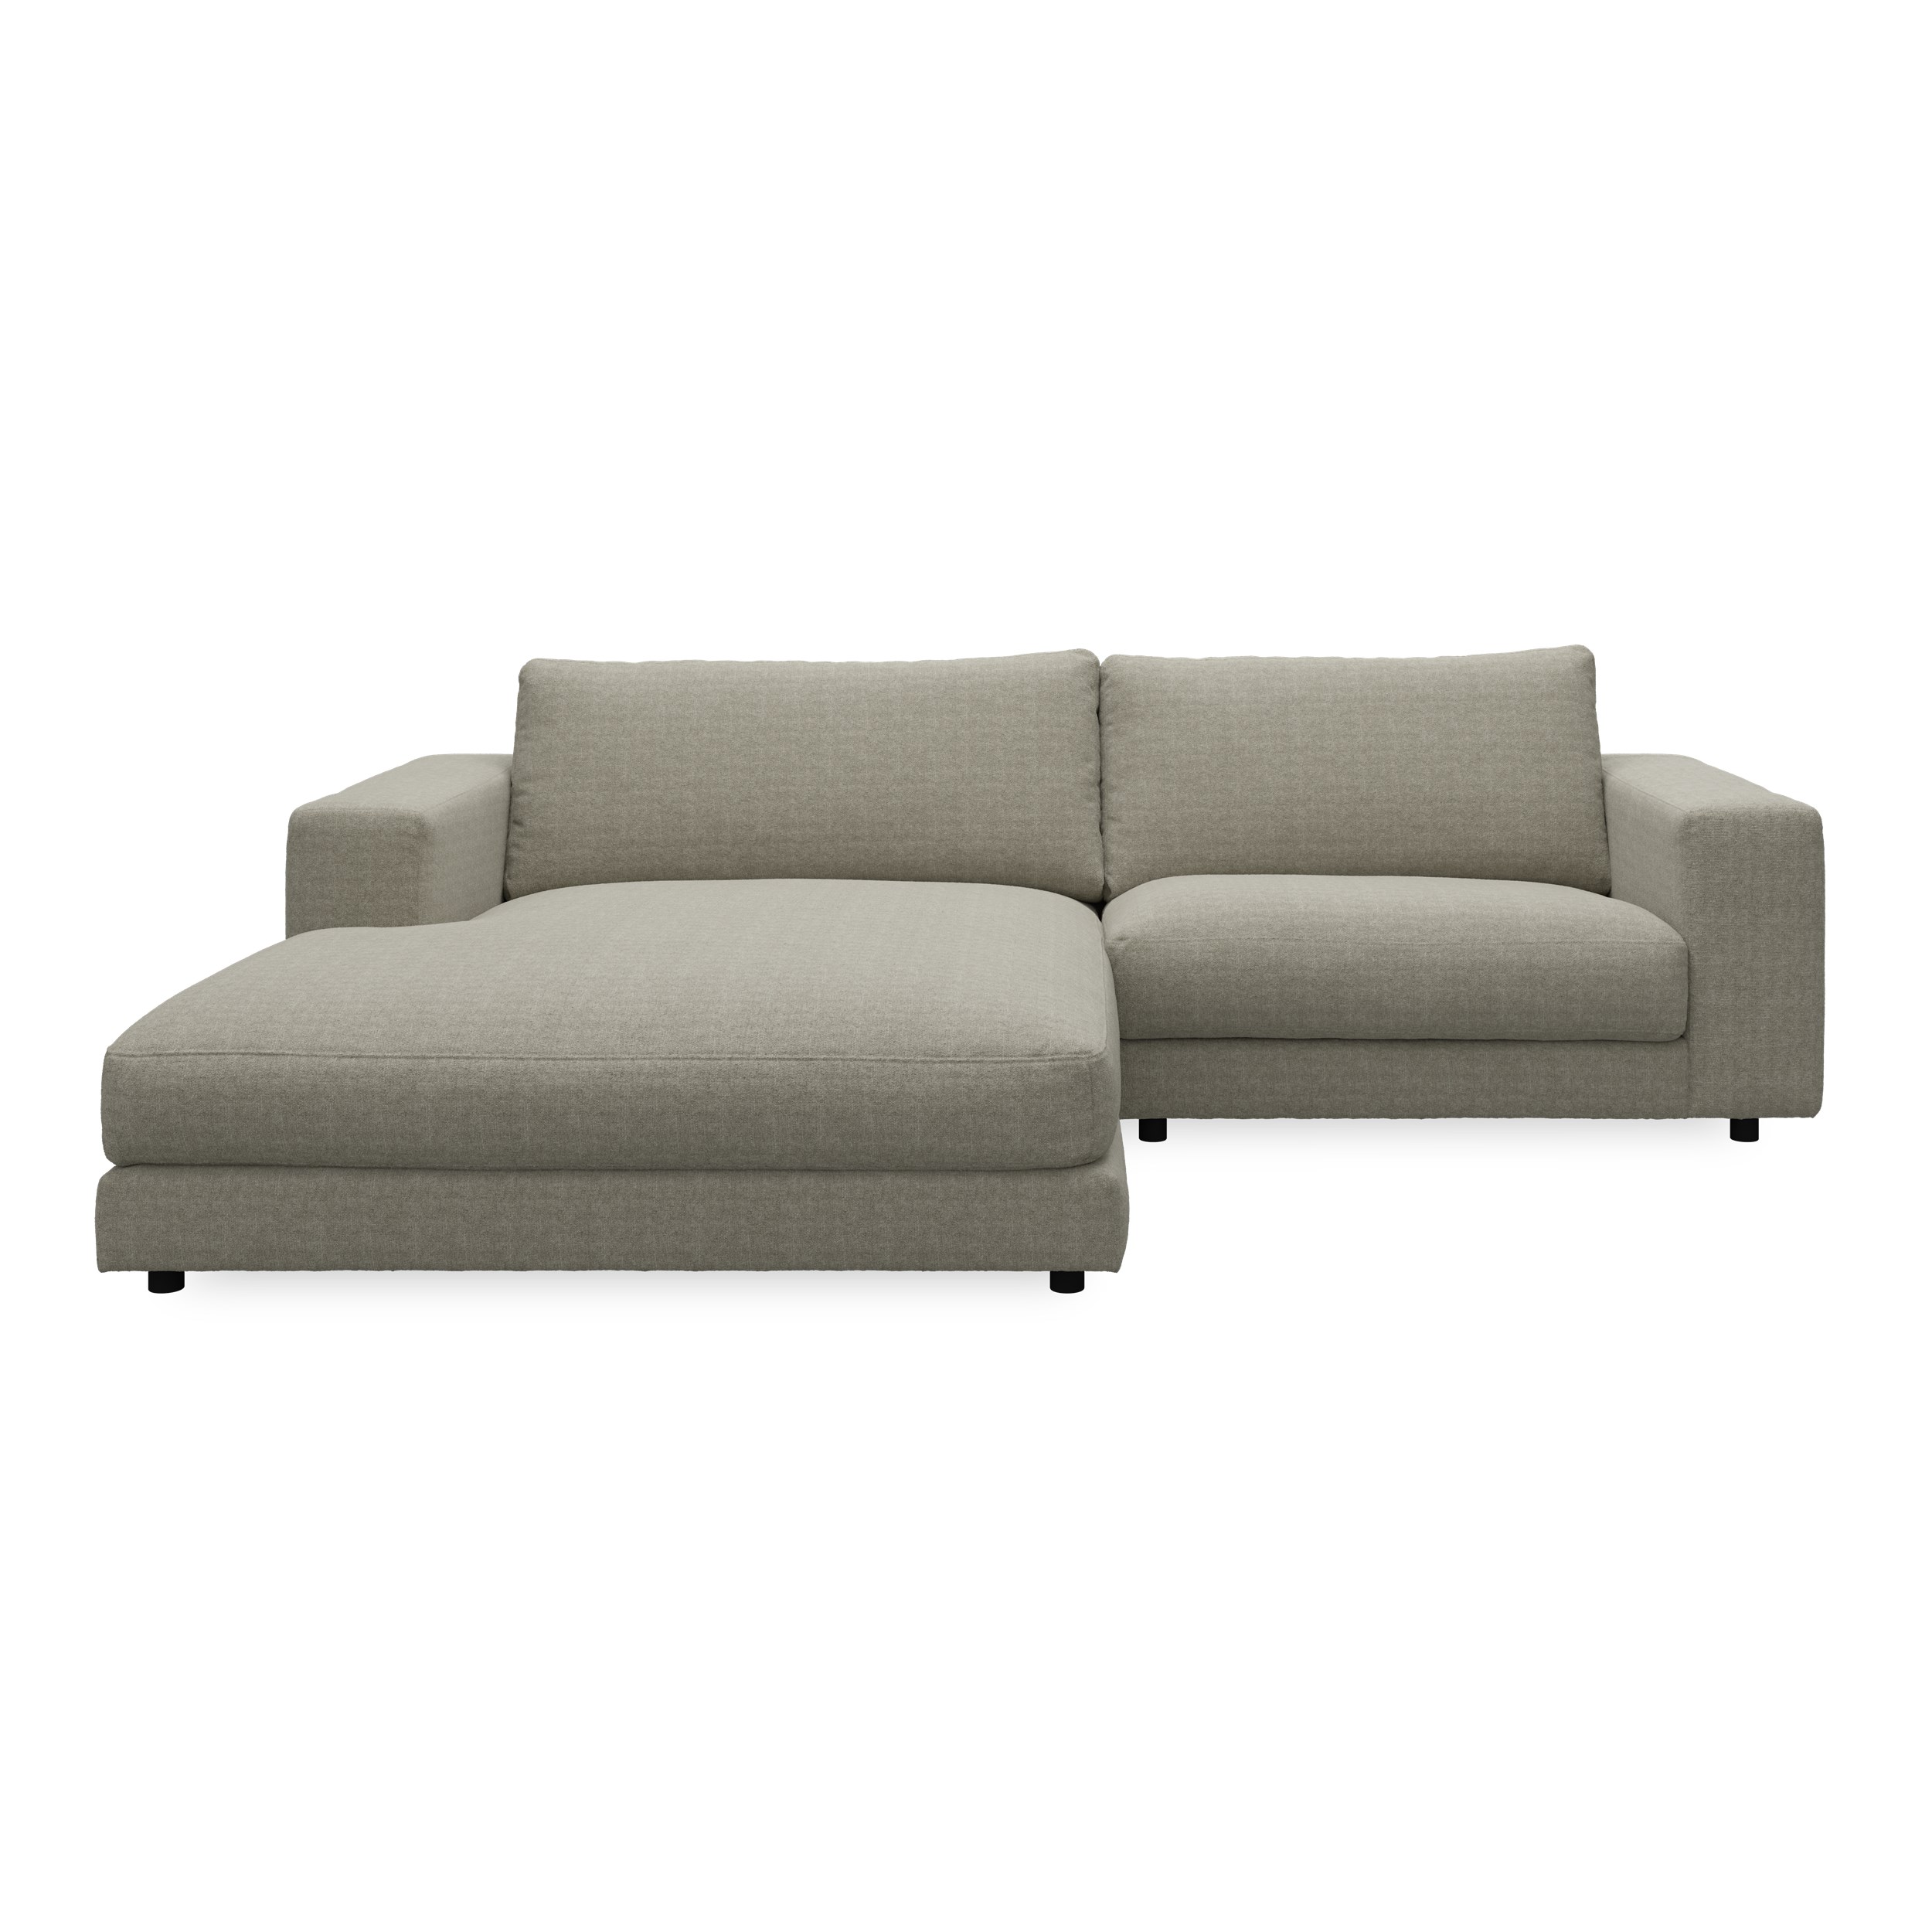 Bennent vänstervänd soffa med schäslong - Yelda Taupe klädsel, ben i svart plast och S:skum/fib/din/sili R:Dun/skum